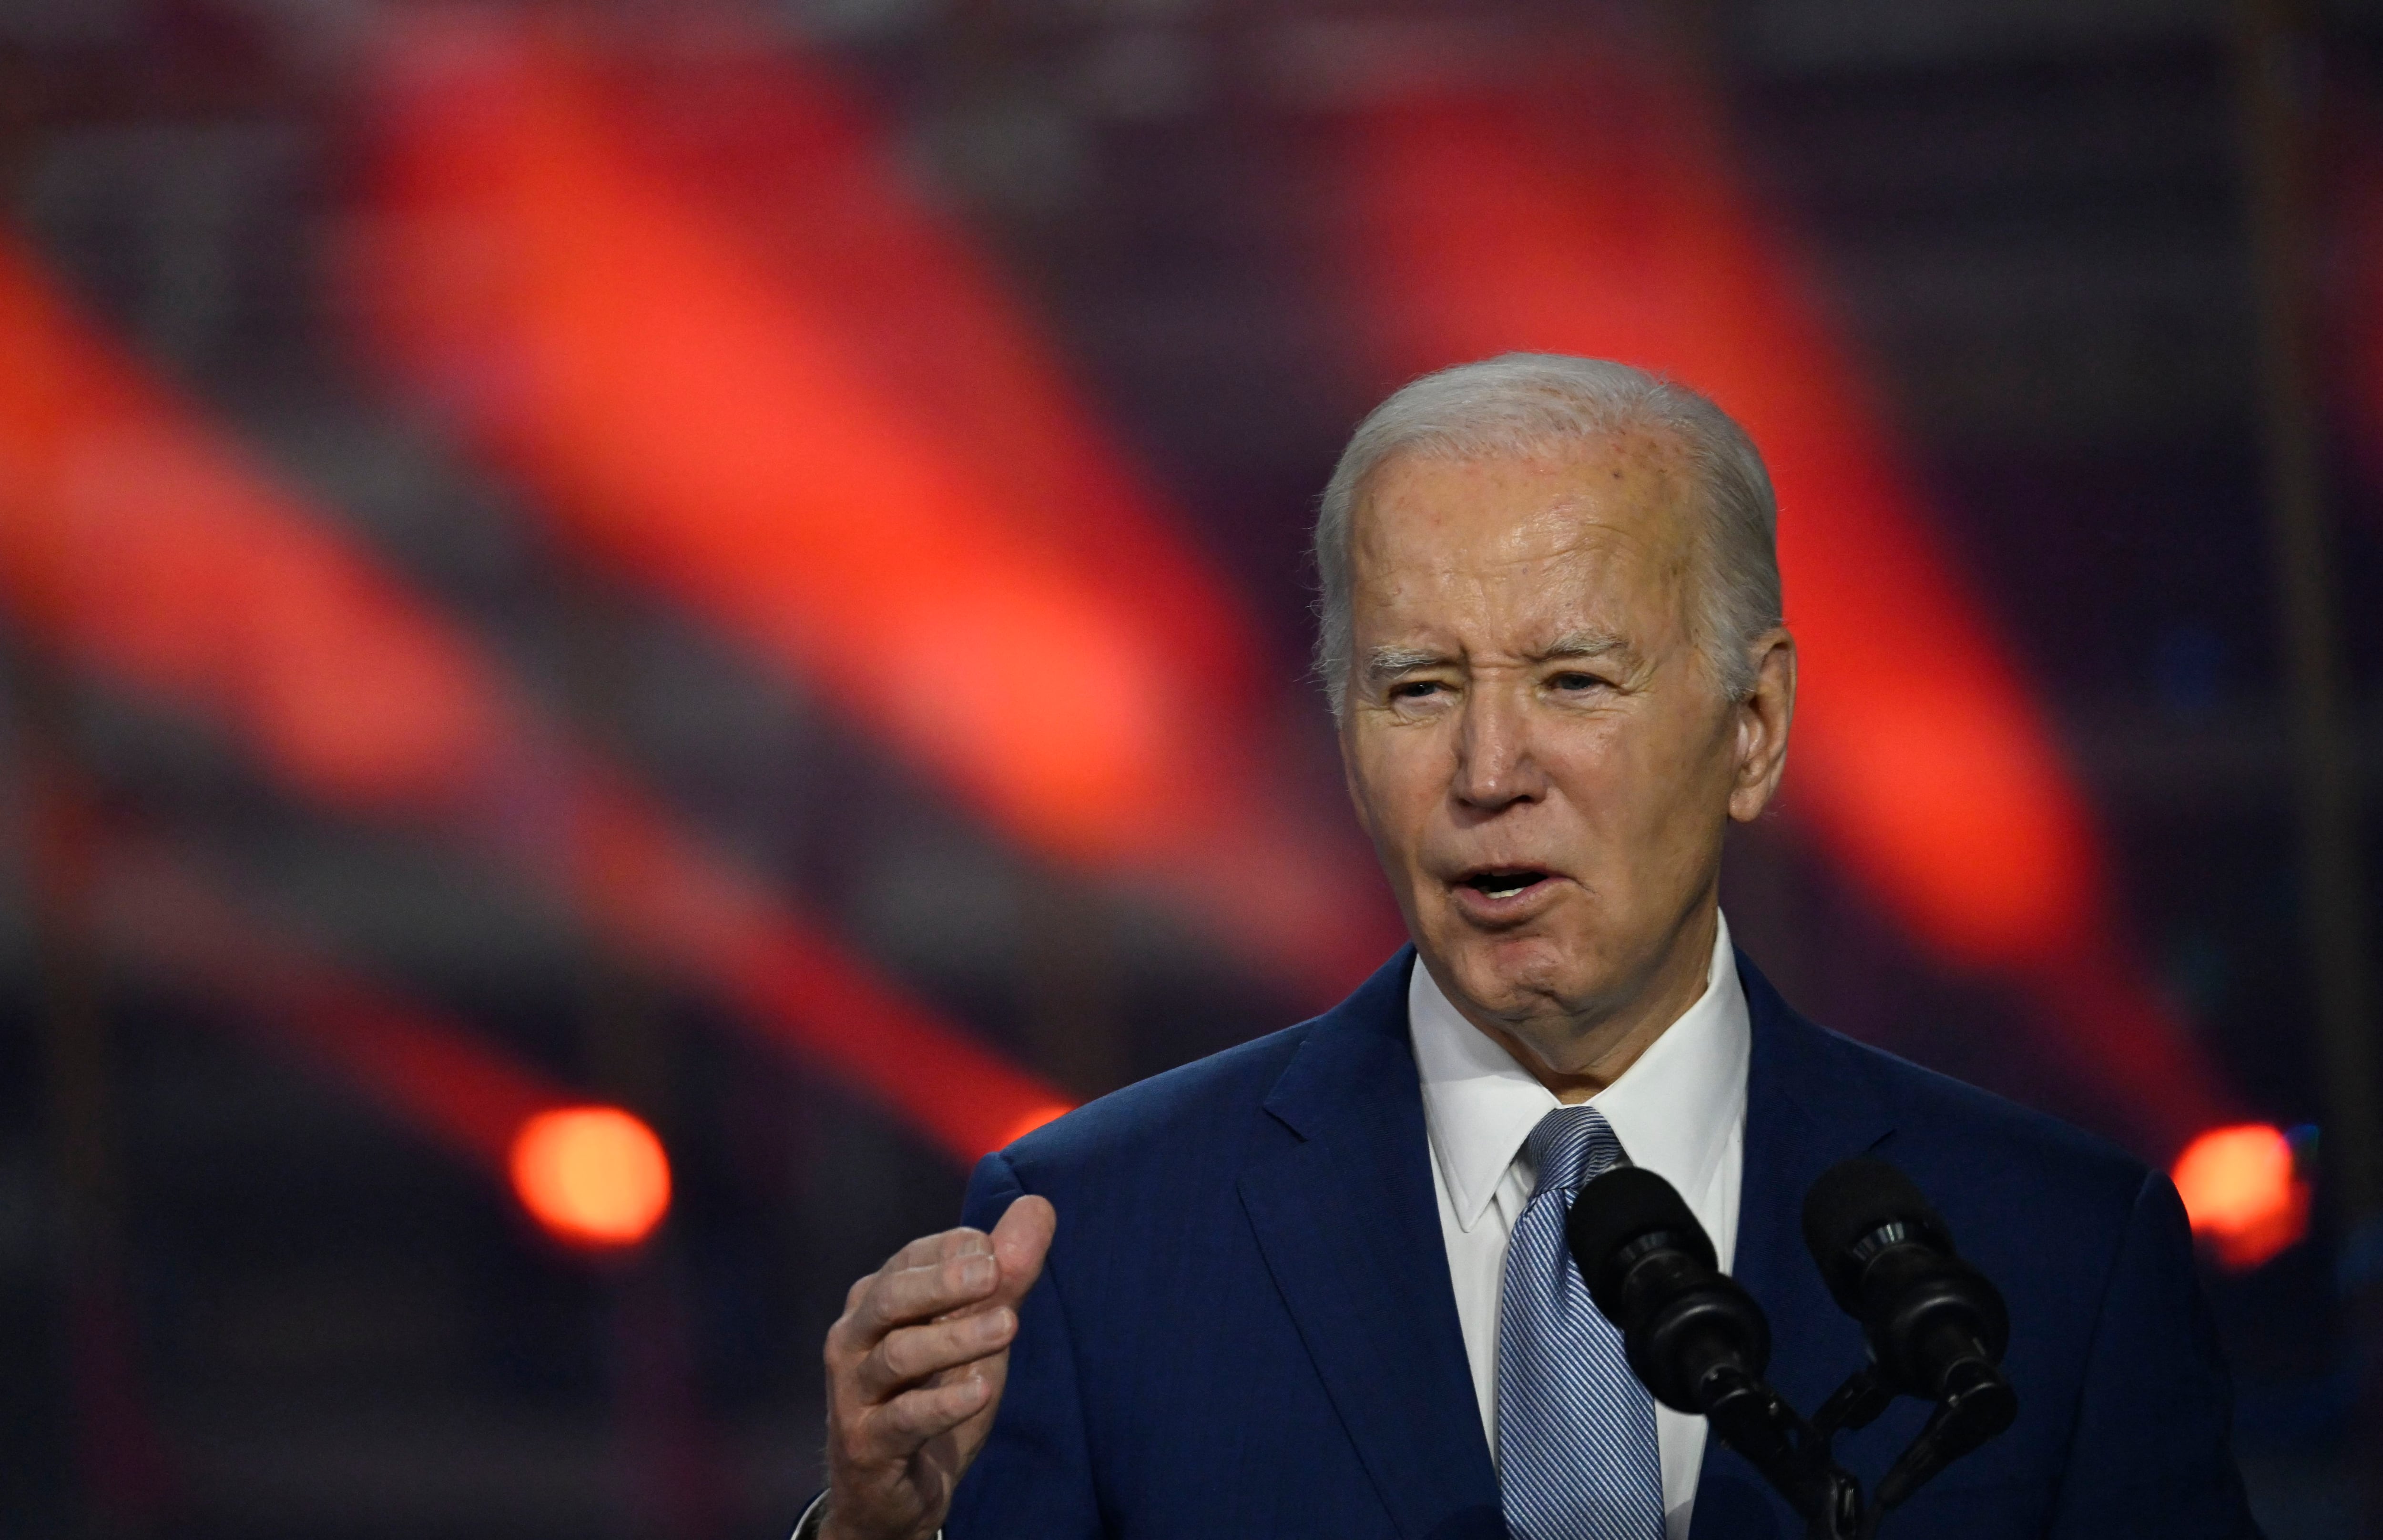 El presidente estadounidense, Joe Biden, calificó de “espantosos y peligrosos” los comentarios de Donald Trump que restan importancia a los compromisos con la Organización del Tratdo del Atlántico Norte (OTAN).